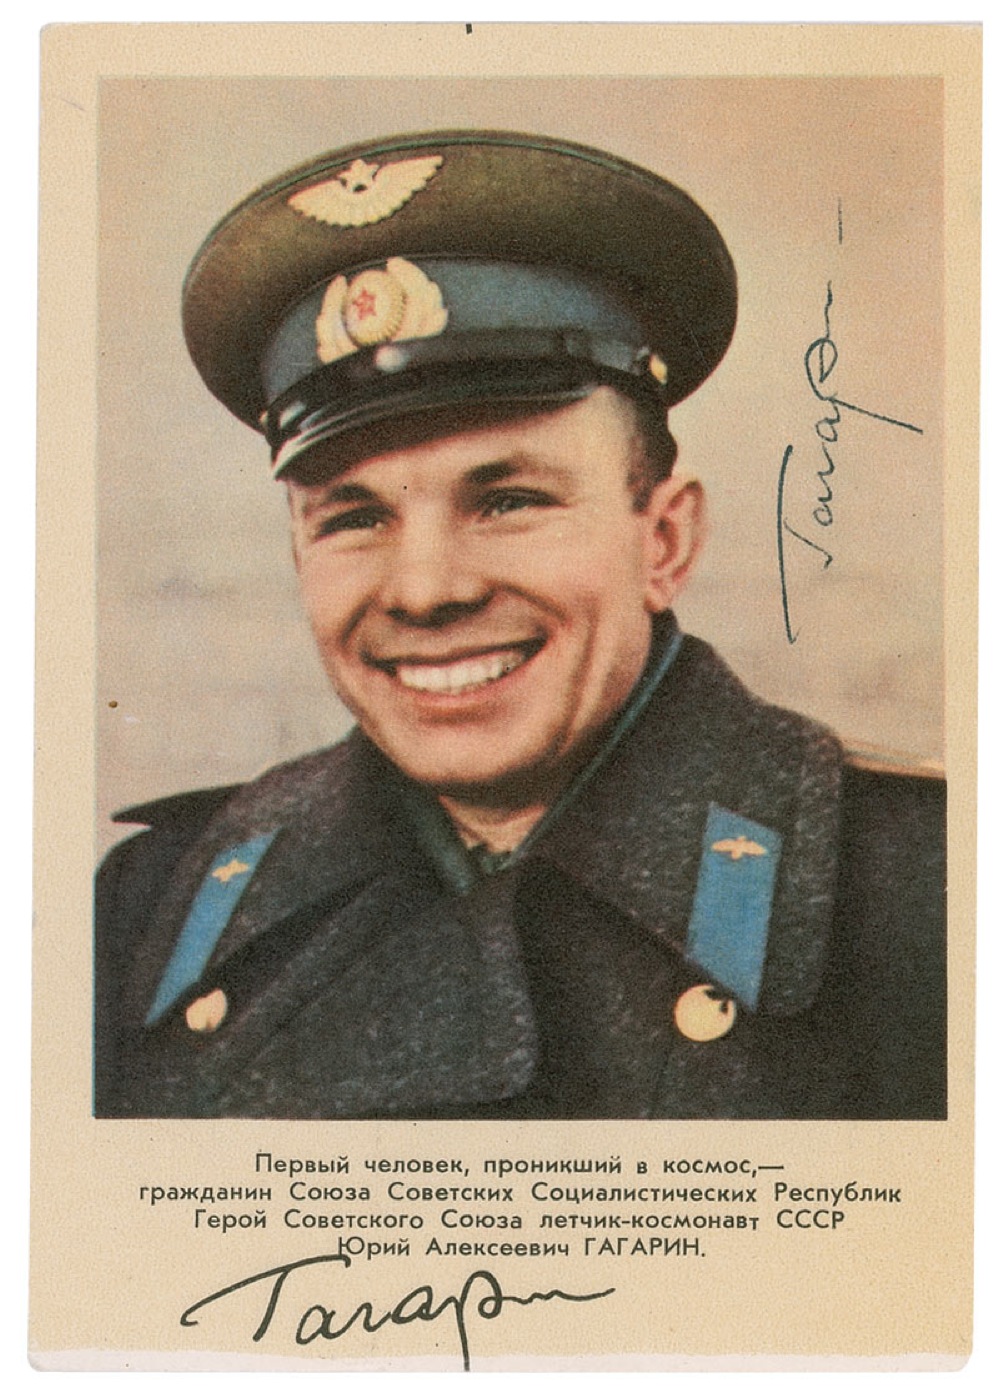 Lot #554 Yuri Gagarin